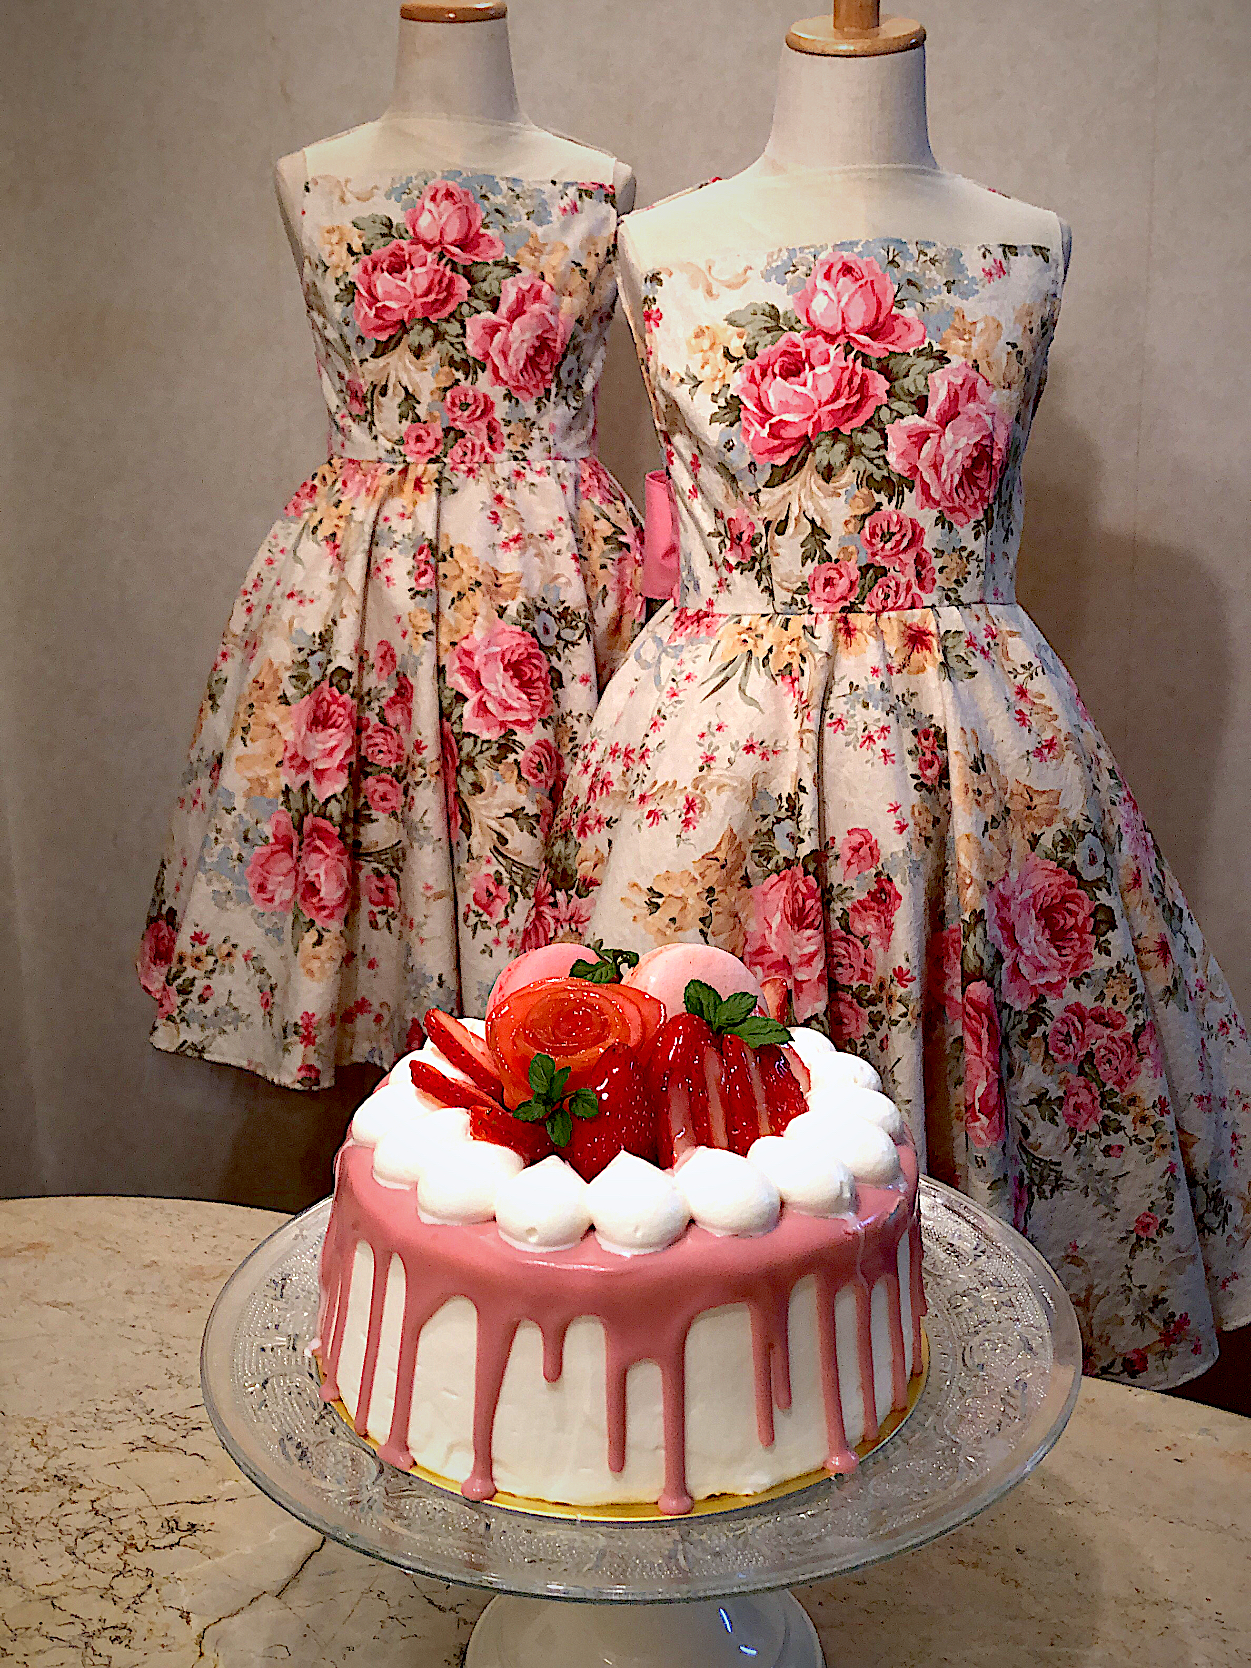 イチゴのケーキ自作のダンス衣装に似合うケーキを作ってみました Ax Snapdish スナップディッシュ Id Lcadfa